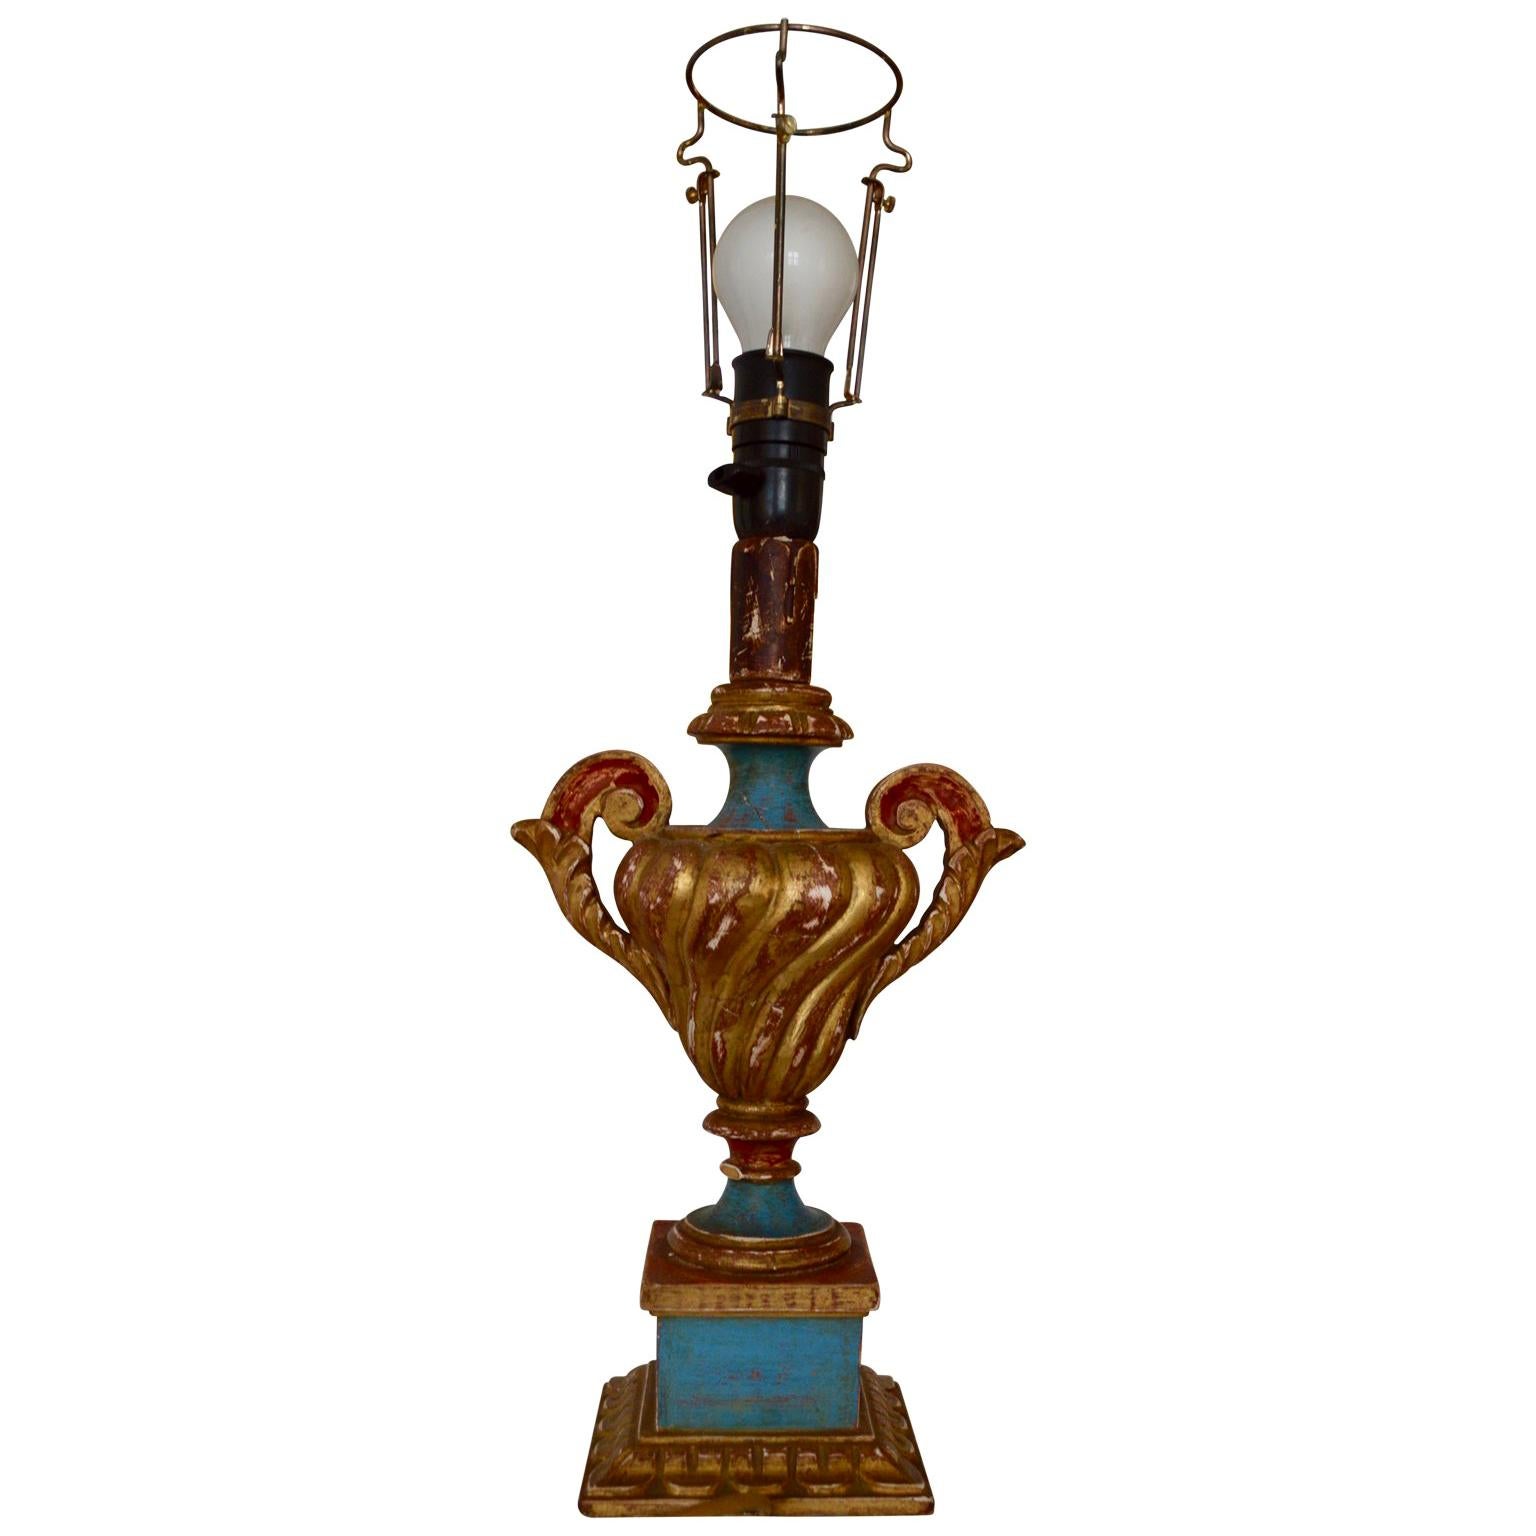 Vergoldete Holz-Tischlampe in Form einer Urne aus dem 19. Jahrhundert im Rokokostil